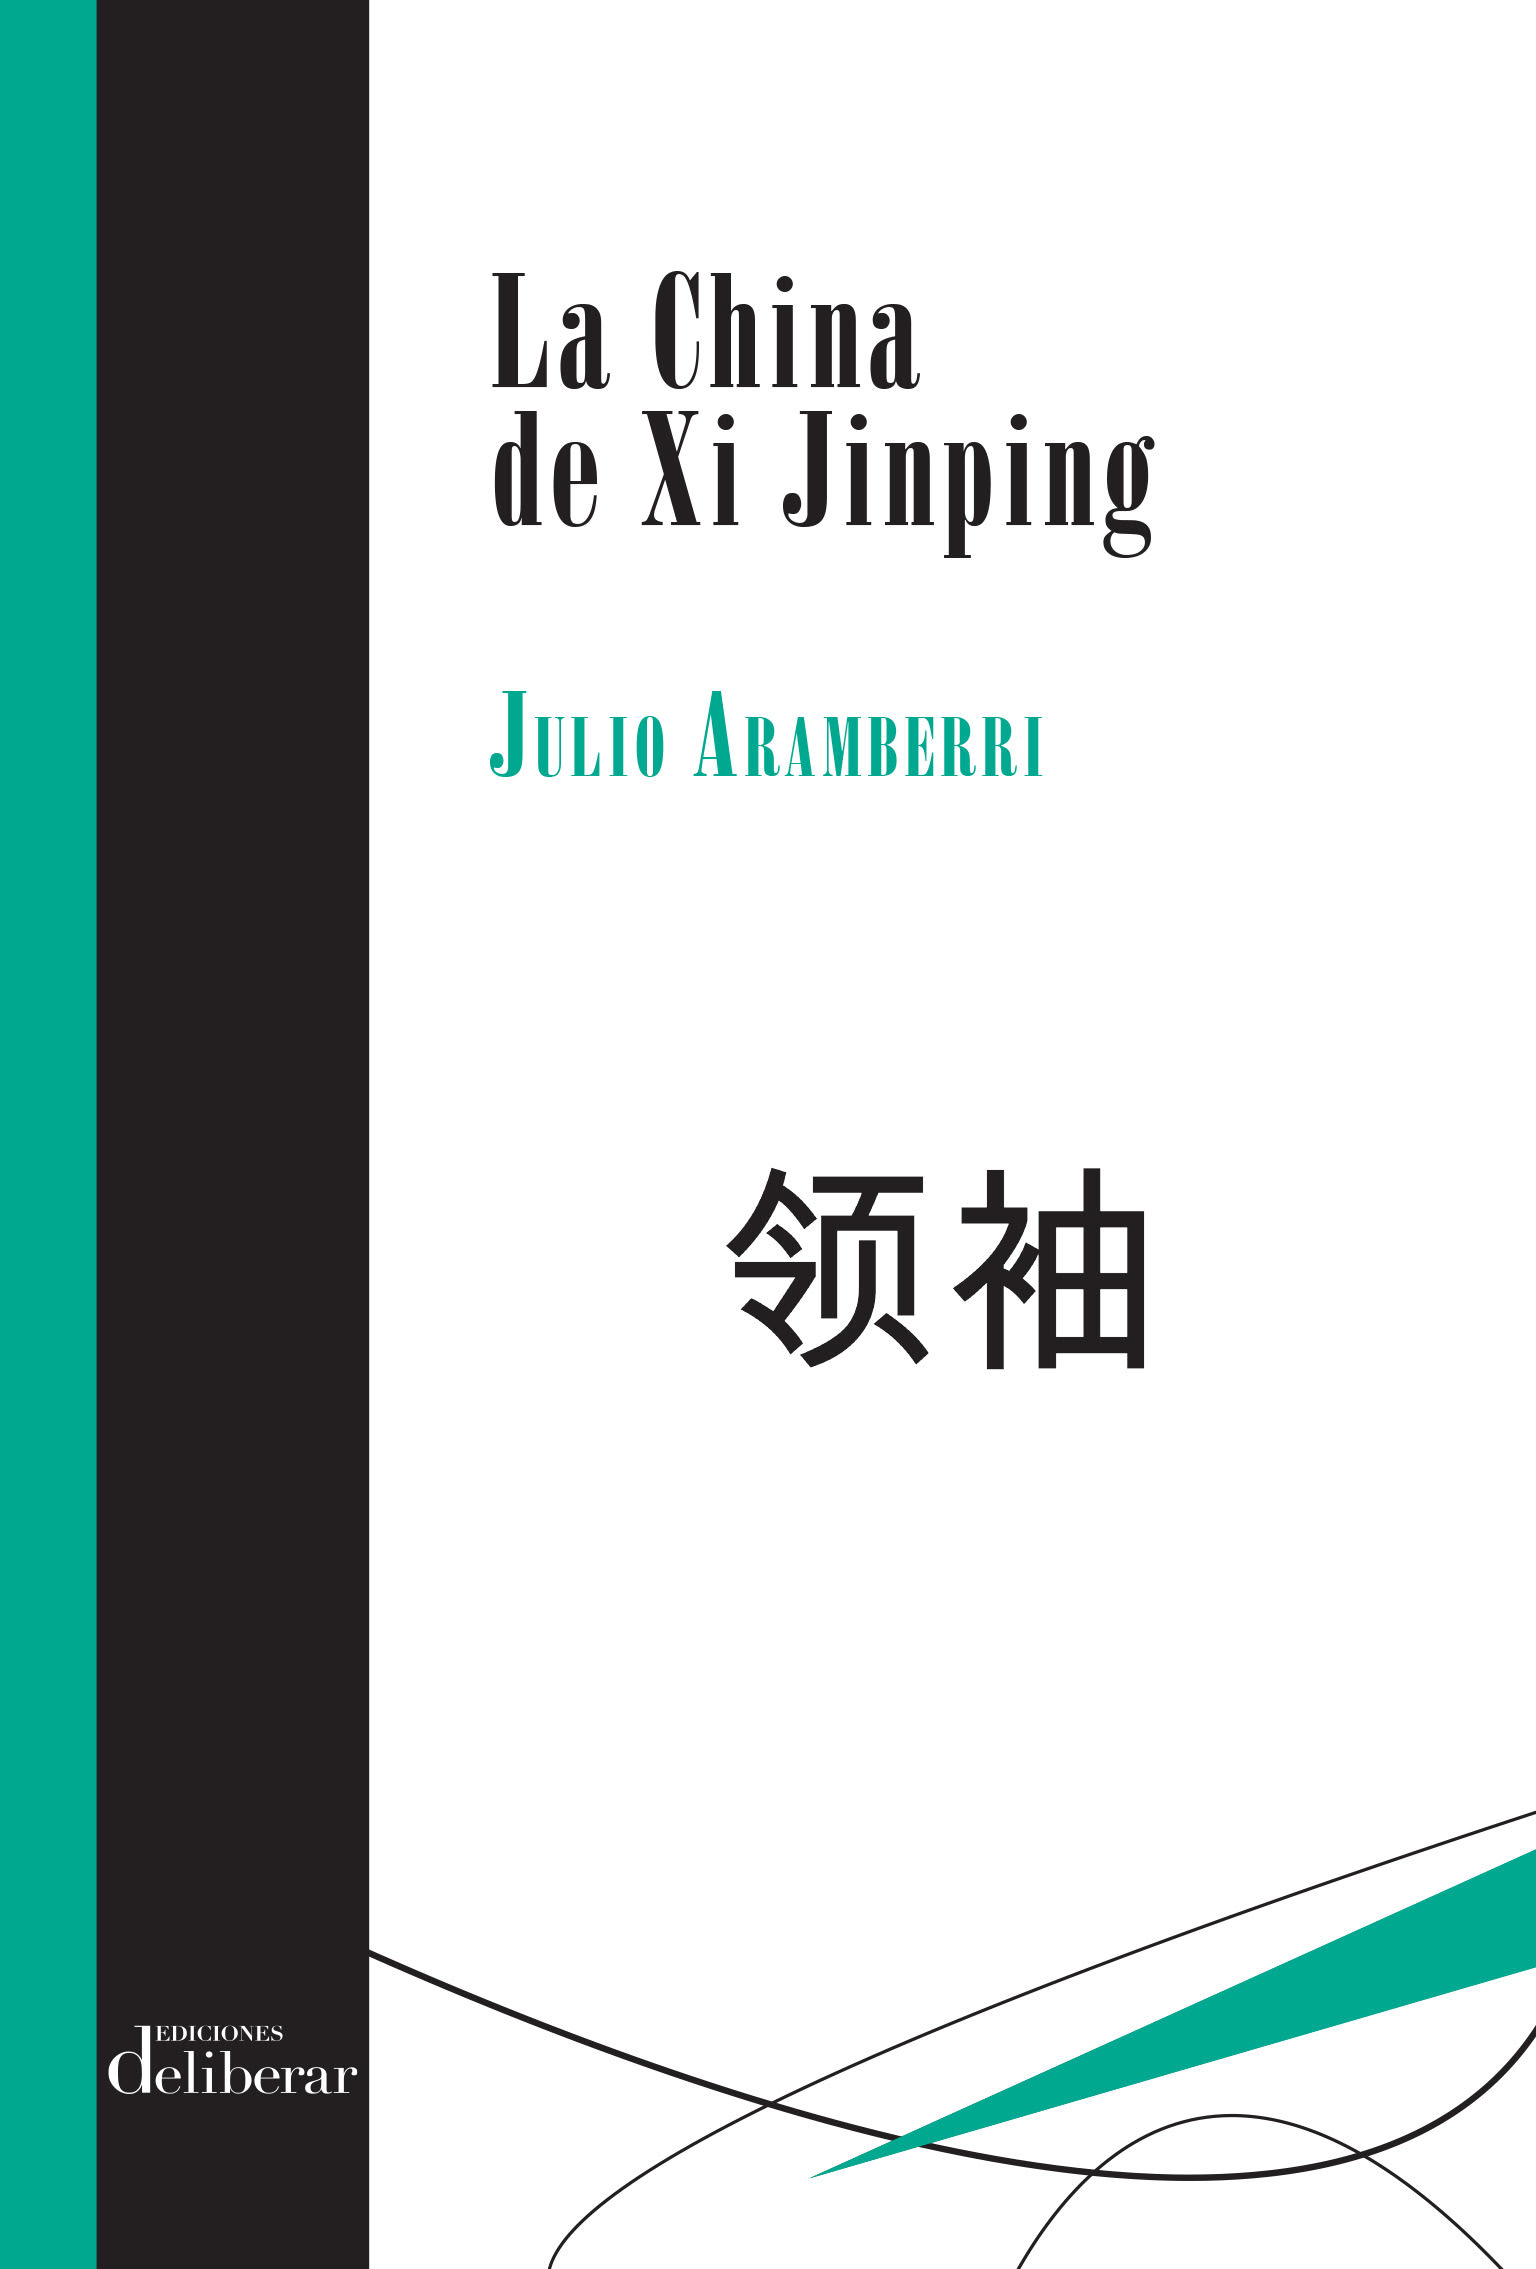 JULIO ARAMBERRI. La China de Xi Jinping (Ediciones Deliberar)